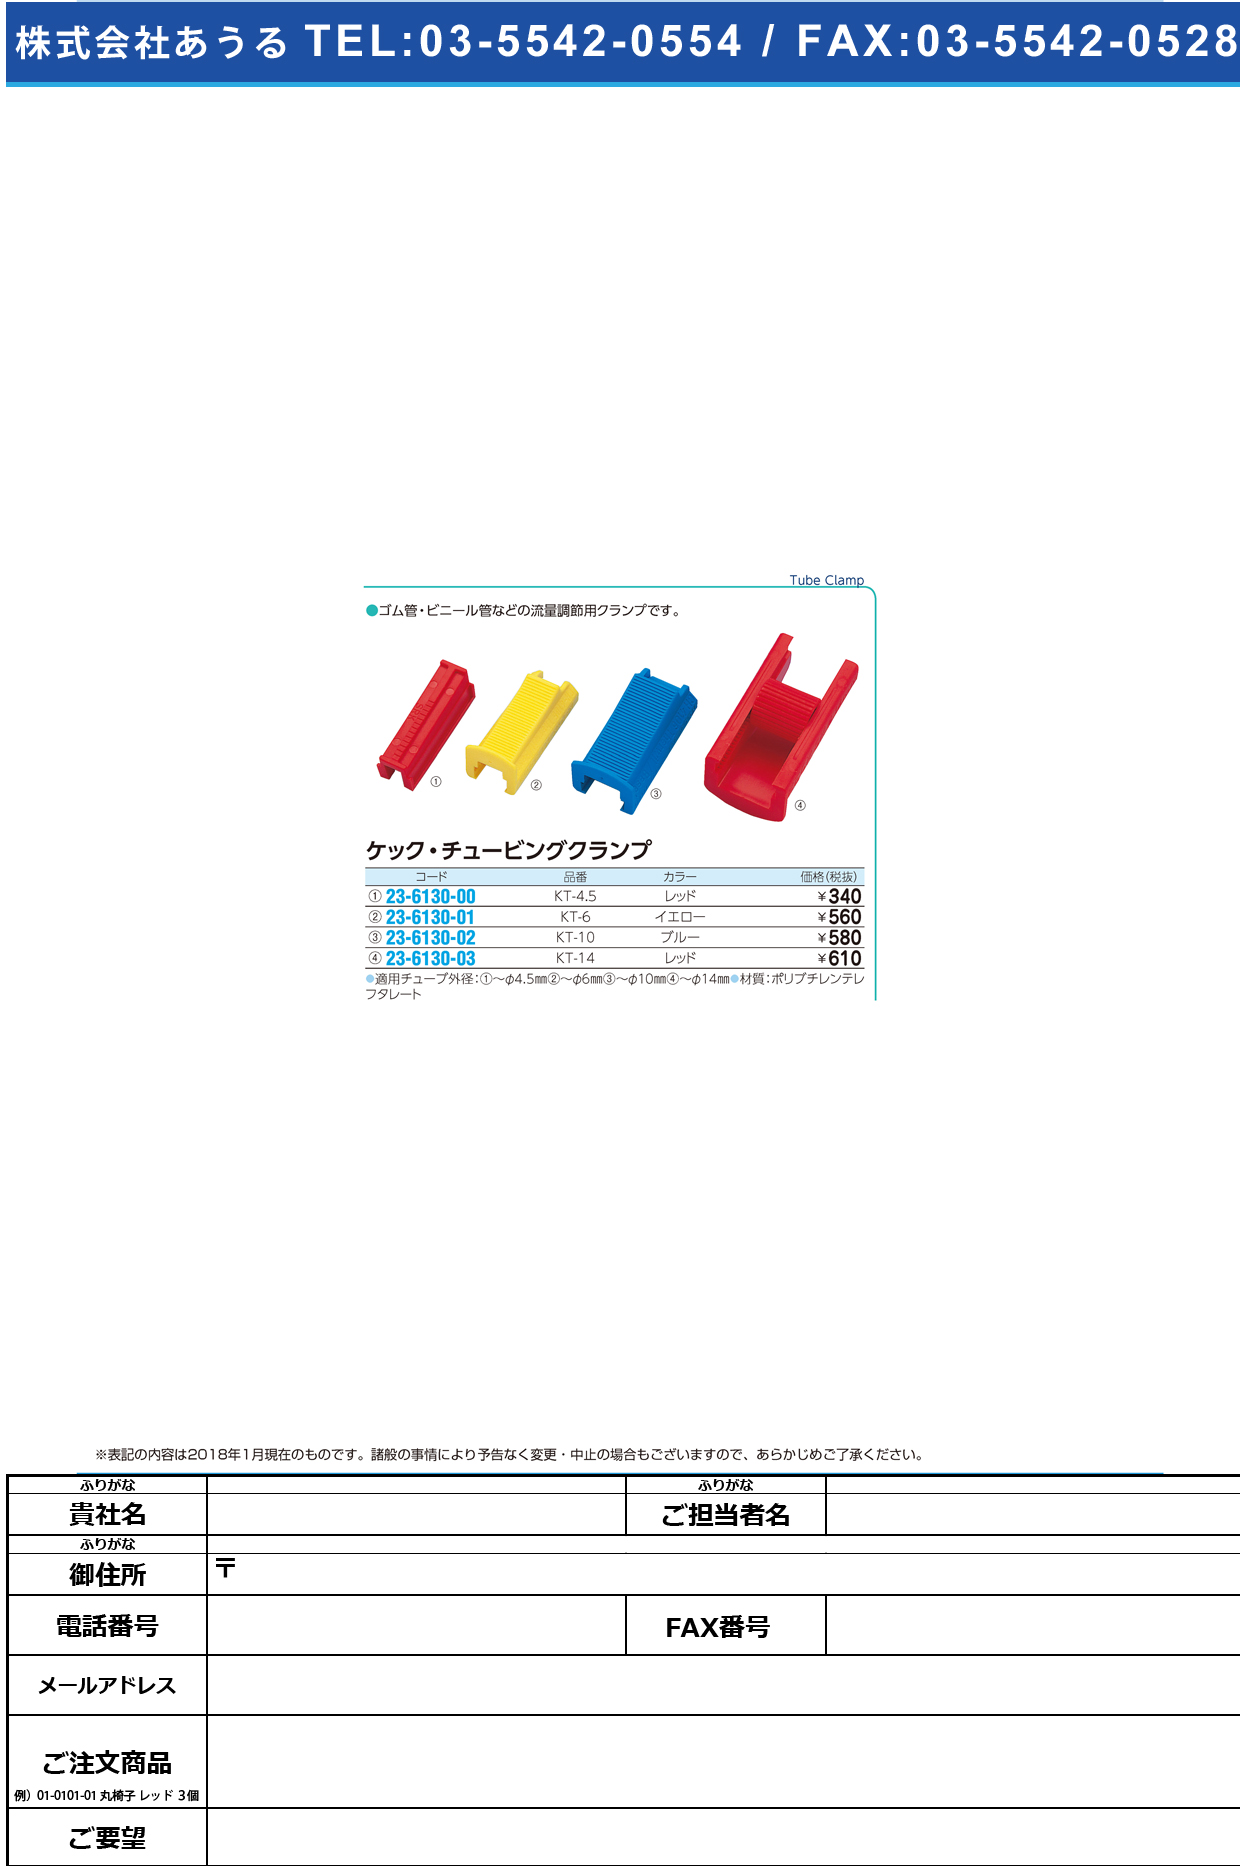 (23-6130-00)ケック・チュービングクランプ KT-4.5(ﾚｯﾄﾞ) ｹｯｸﾁｭｰﾋﾞﾝｸﾞｸﾗﾝﾌﾟ【1個単位】【2019年カタログ商品】